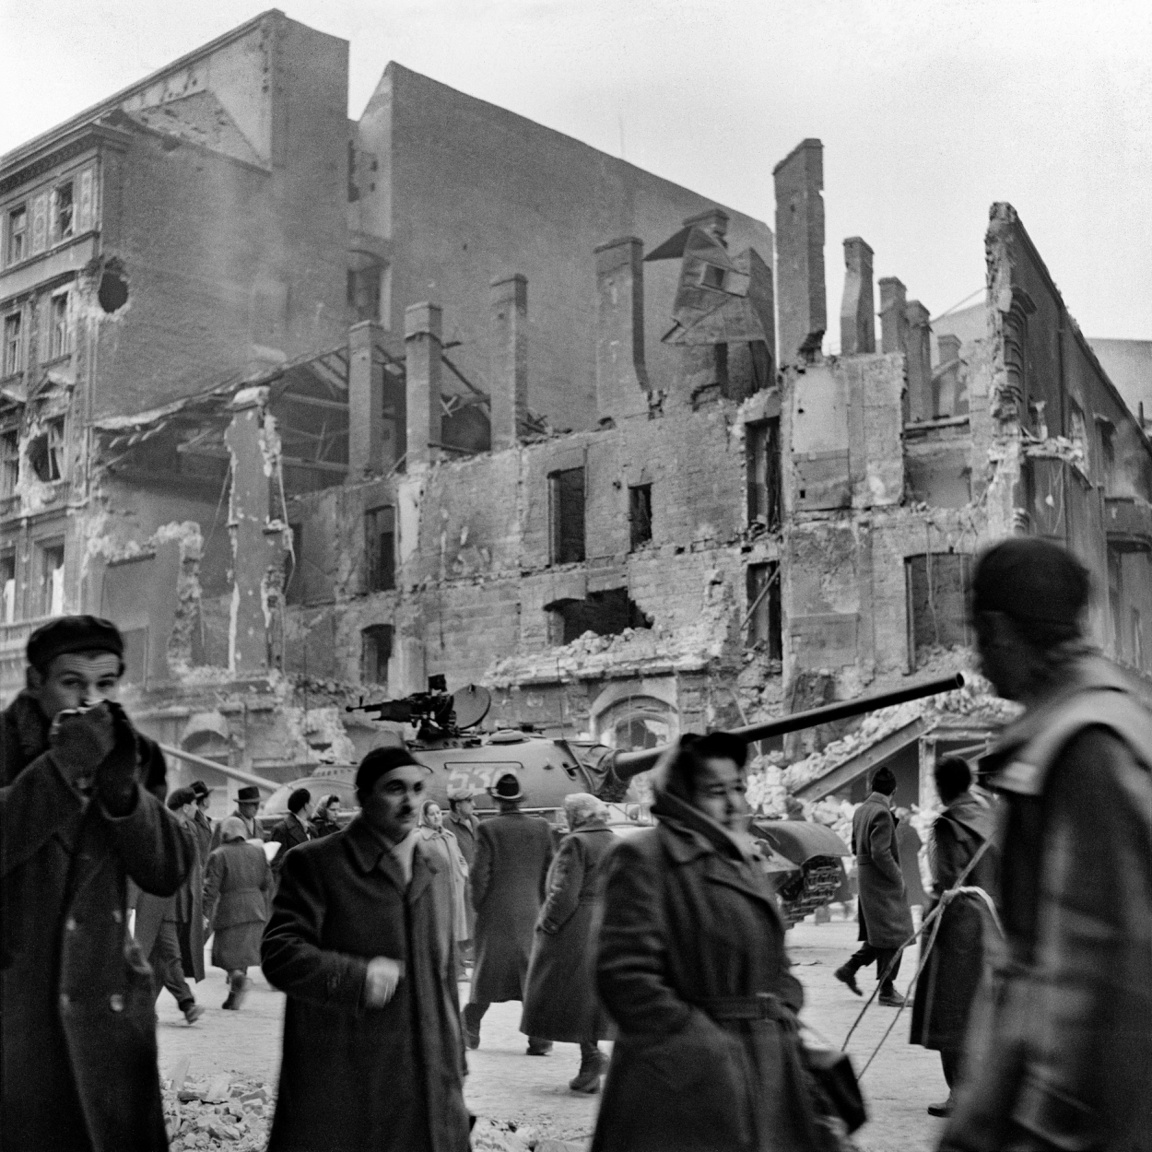 Balla 1956 októberében is fotózott: Sashalomról gyalogolt be Budapestre, hogy megörökítse a forradalmi tömeget, a szétlőtt várost, az utcákon elesettek holttesteit. A képeket a felszólítás ellenére sem adta le a hatóságoknak, amiért aztán munkahelyéről kirúgták. (Rákóczi út, 1956. október 29.)
                        